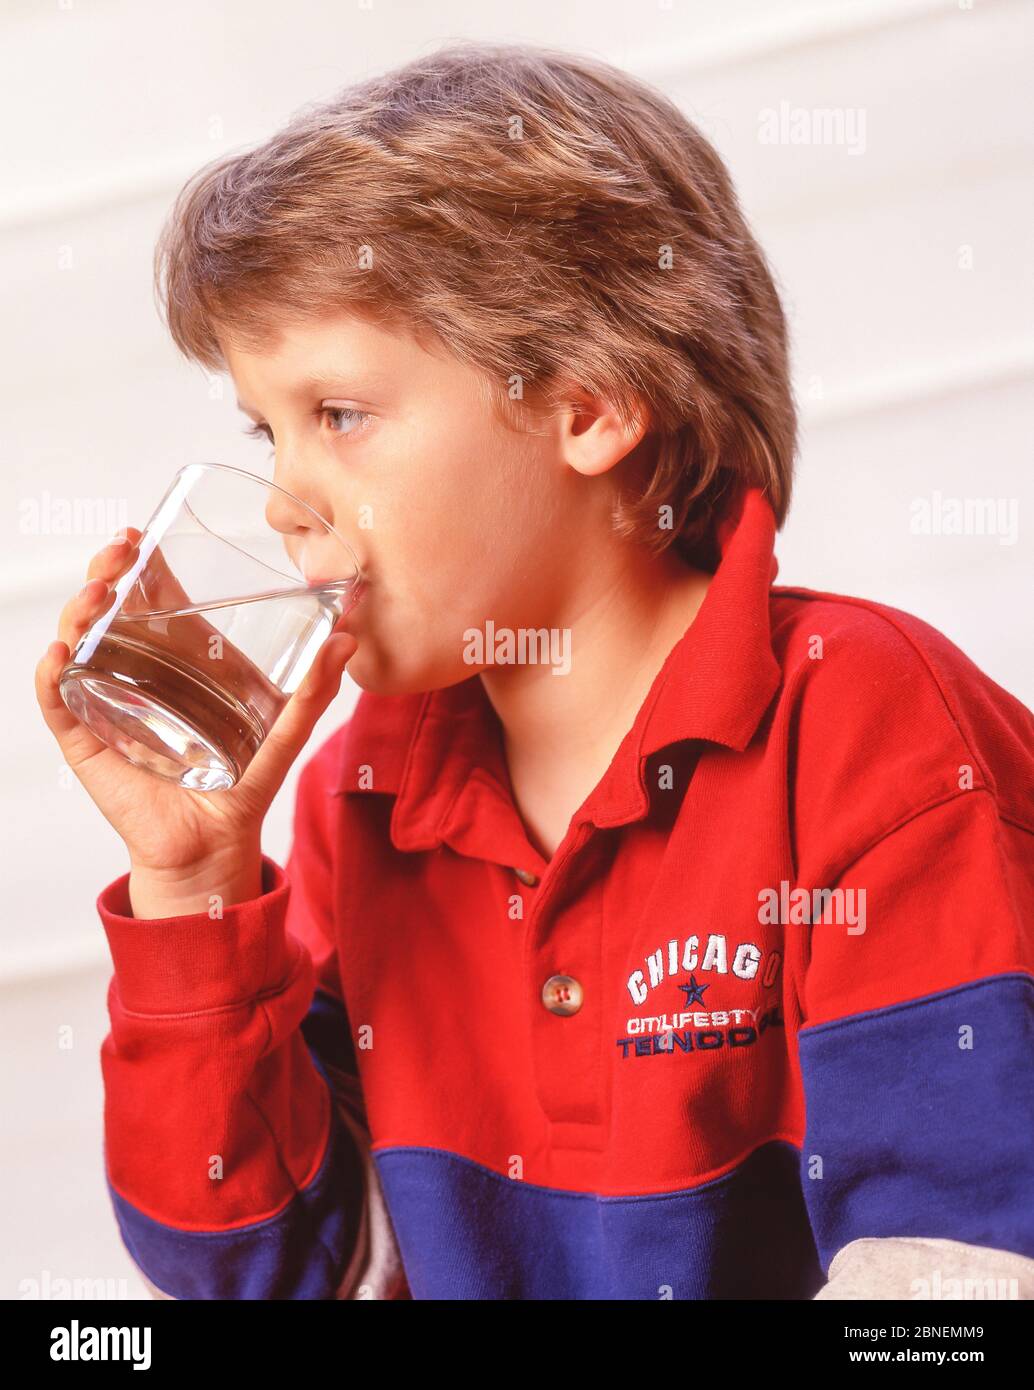 Junges Mädchen, das ein Glas Wasser trinkt, Winkfield, Berkshire, England, Großbritannien Stockfoto